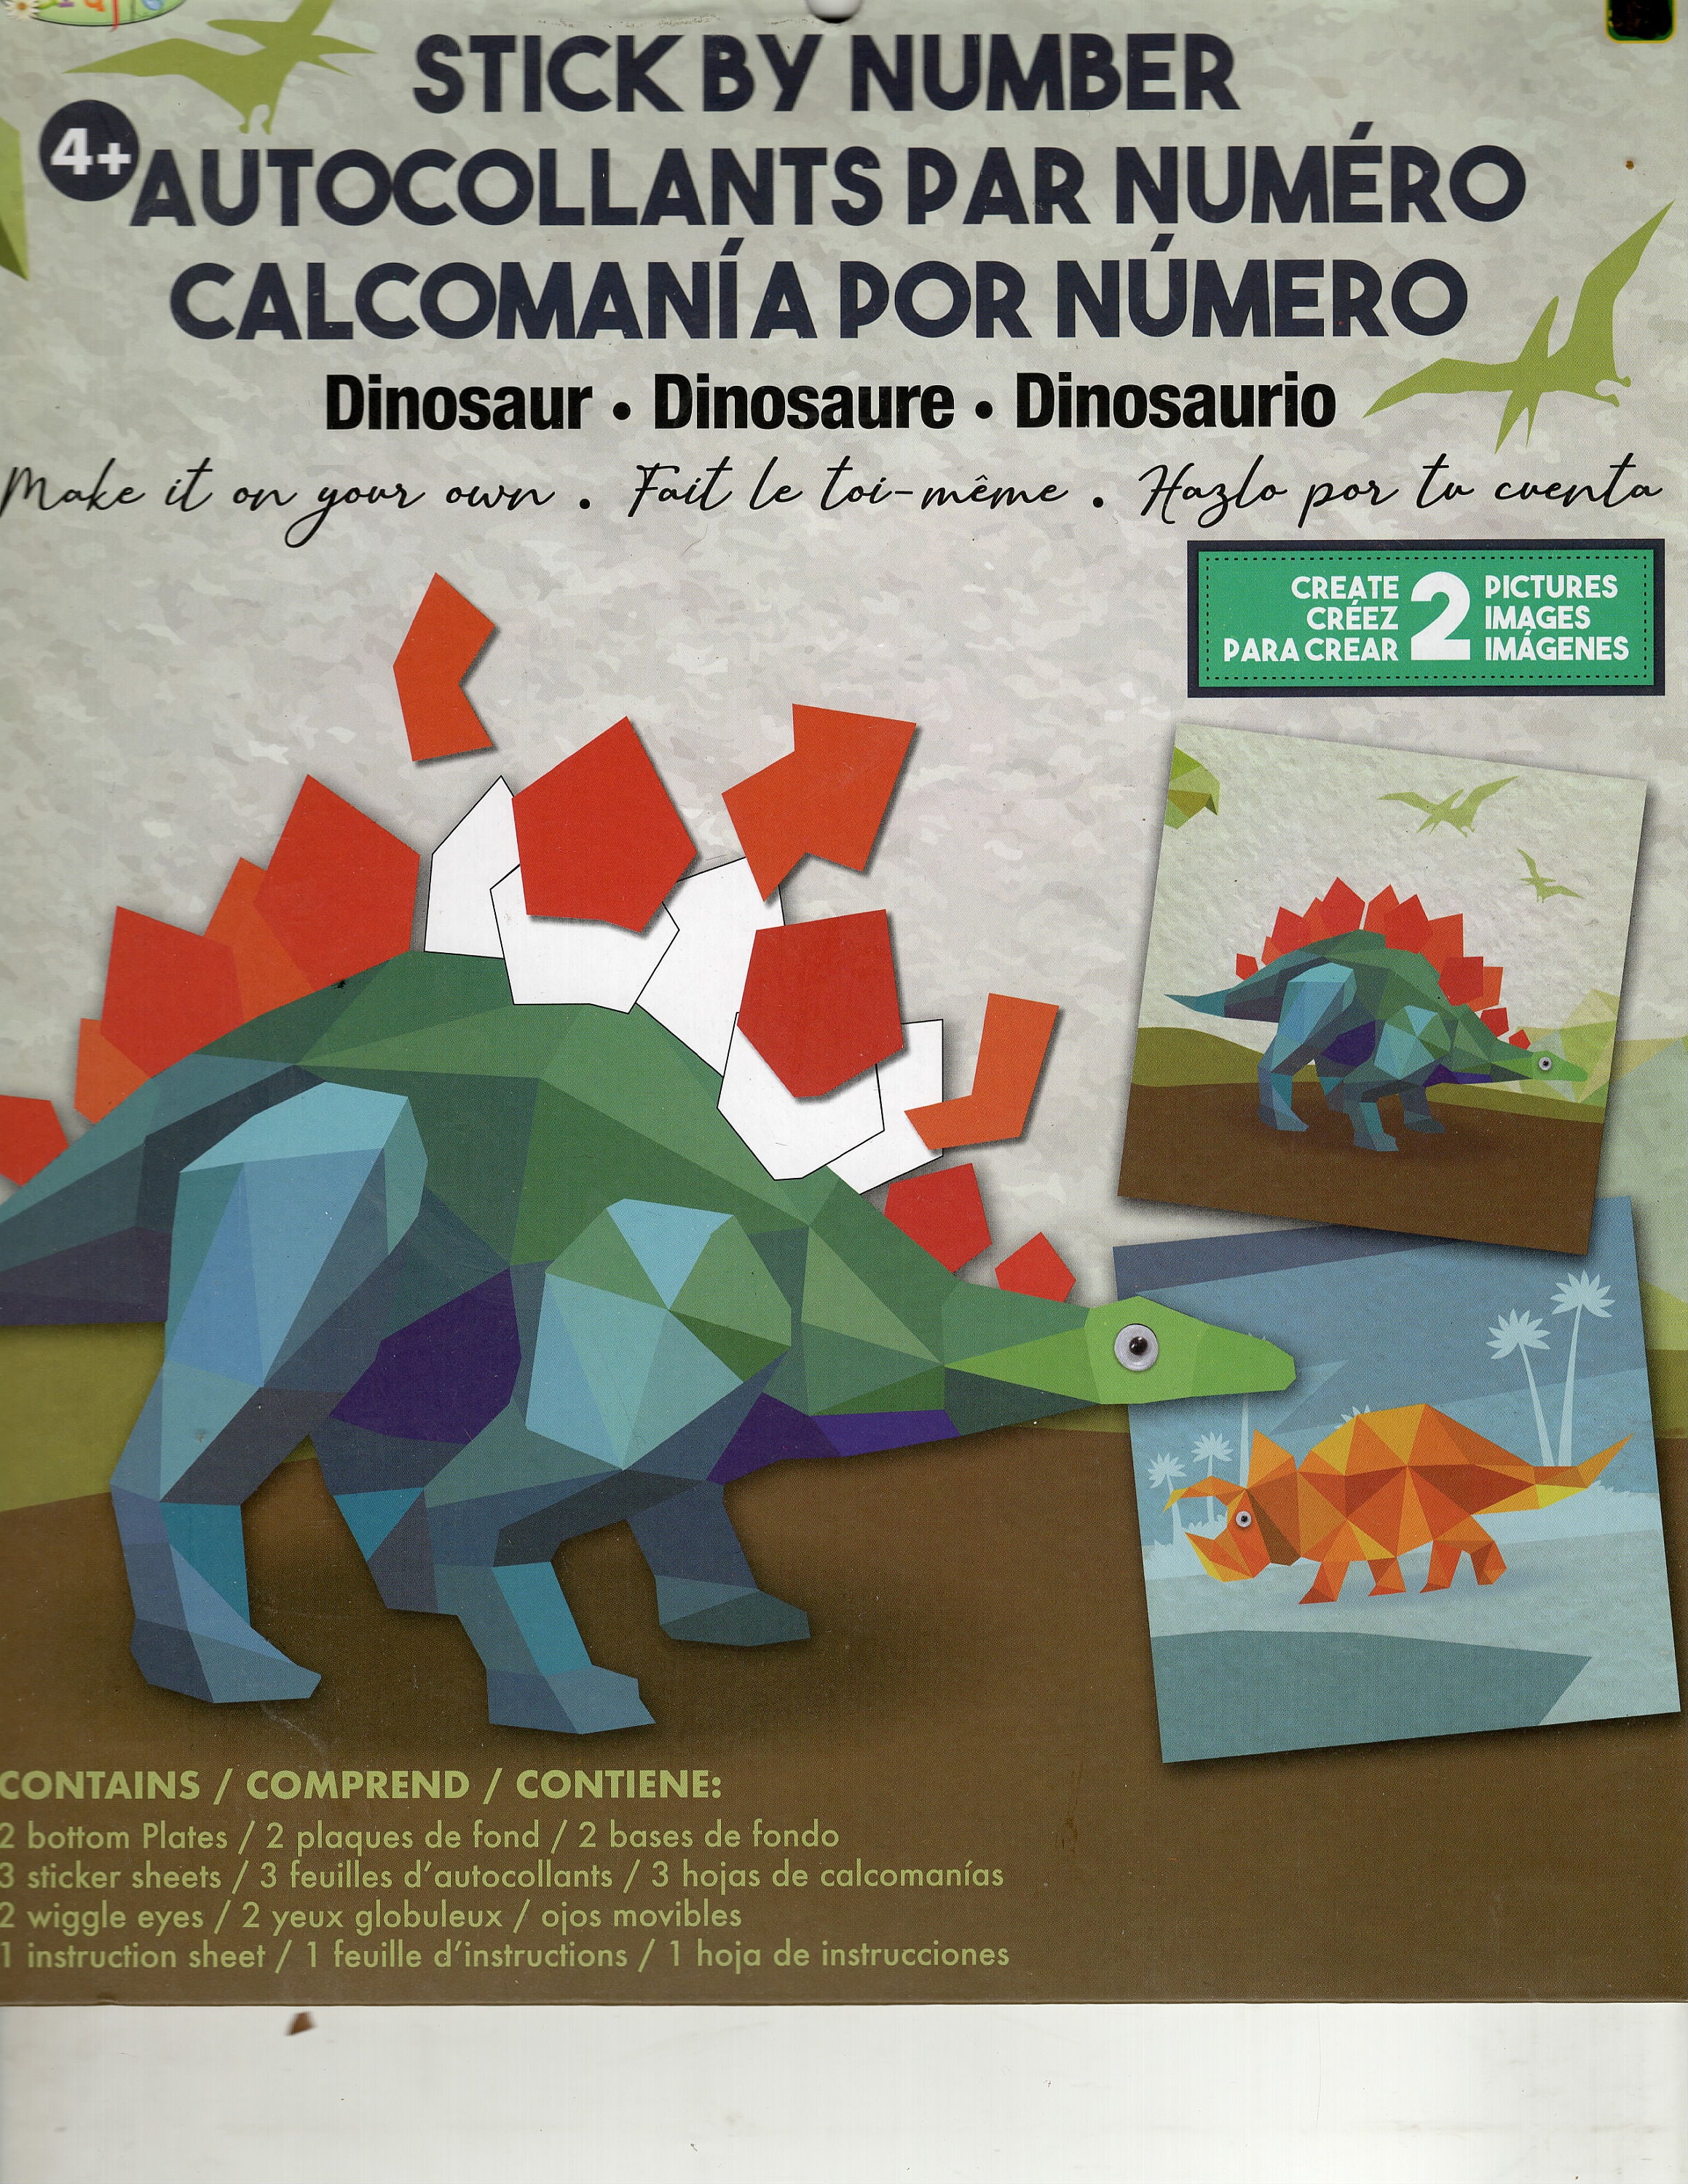 Fliptomania Flipbook Kit - Dinosaurs